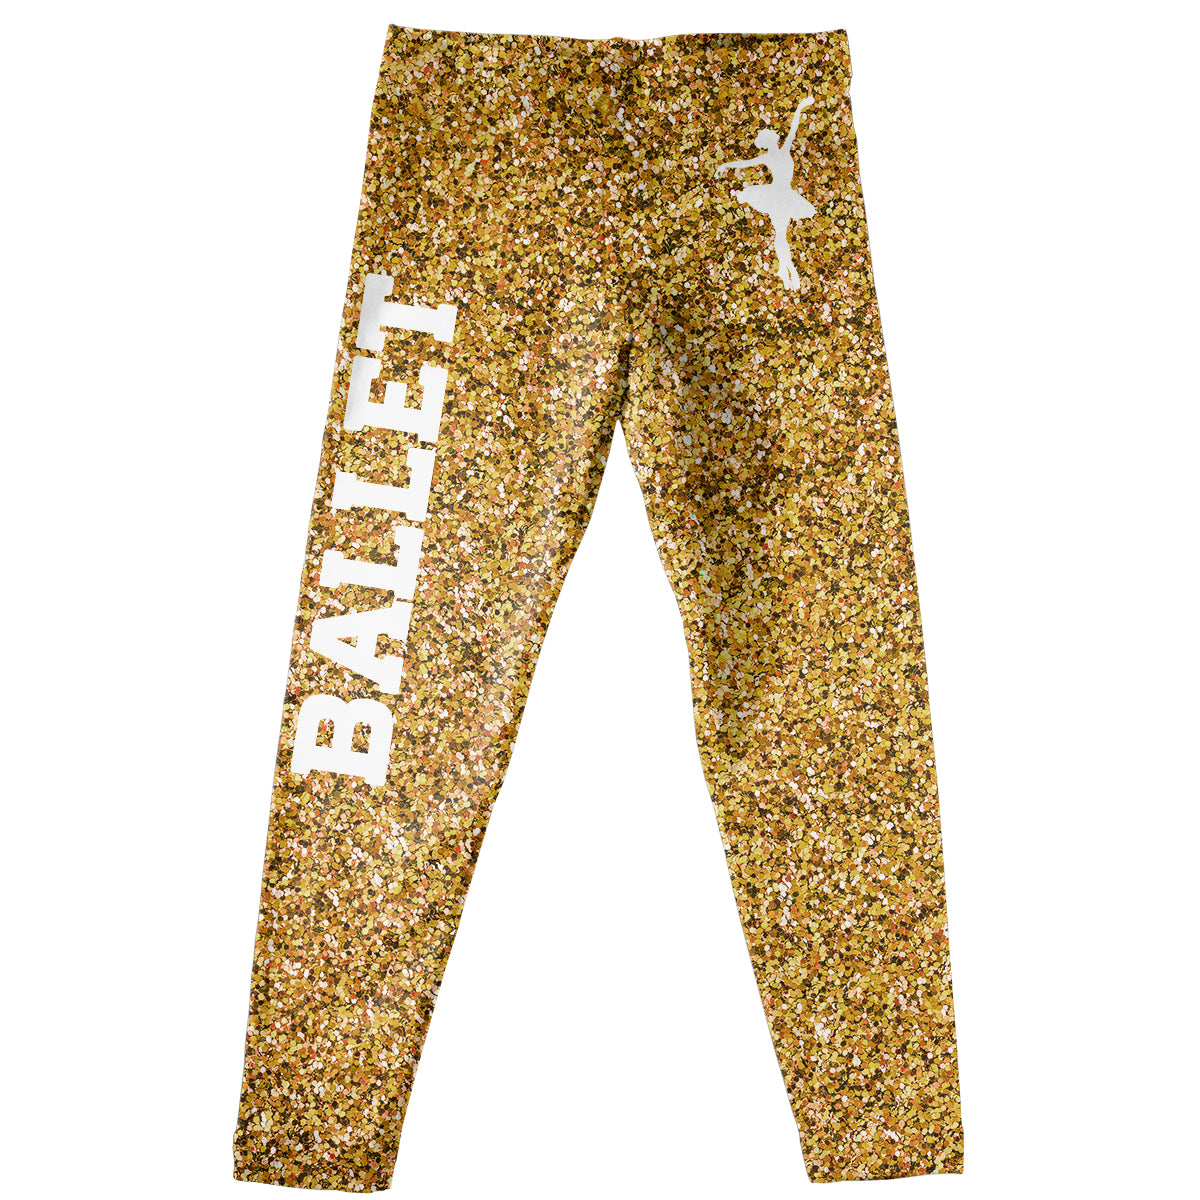 gold glitter leggings